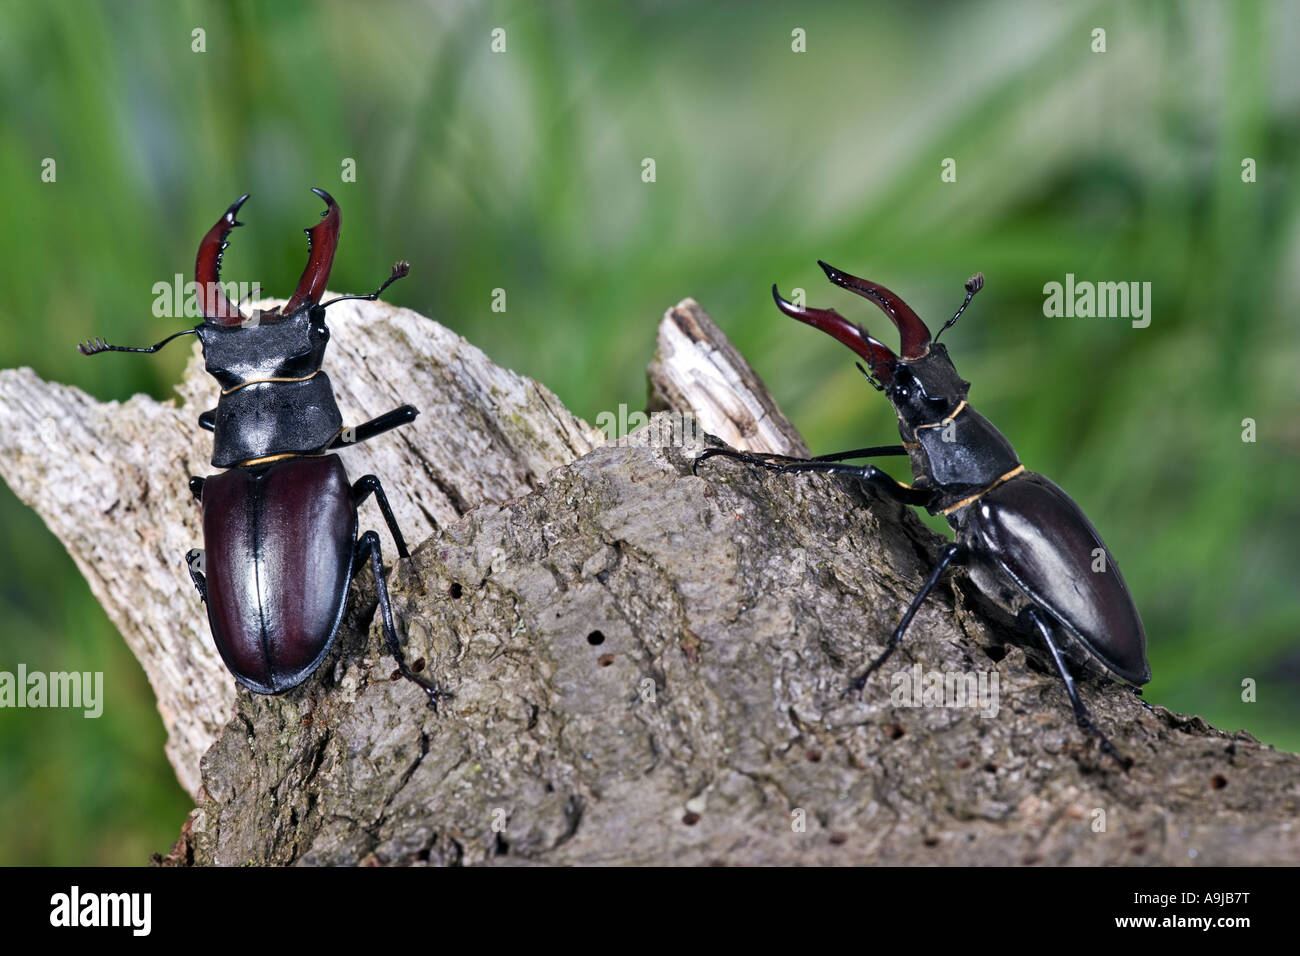 Male European stag beetles Lucanus cervus on log Stock Photo